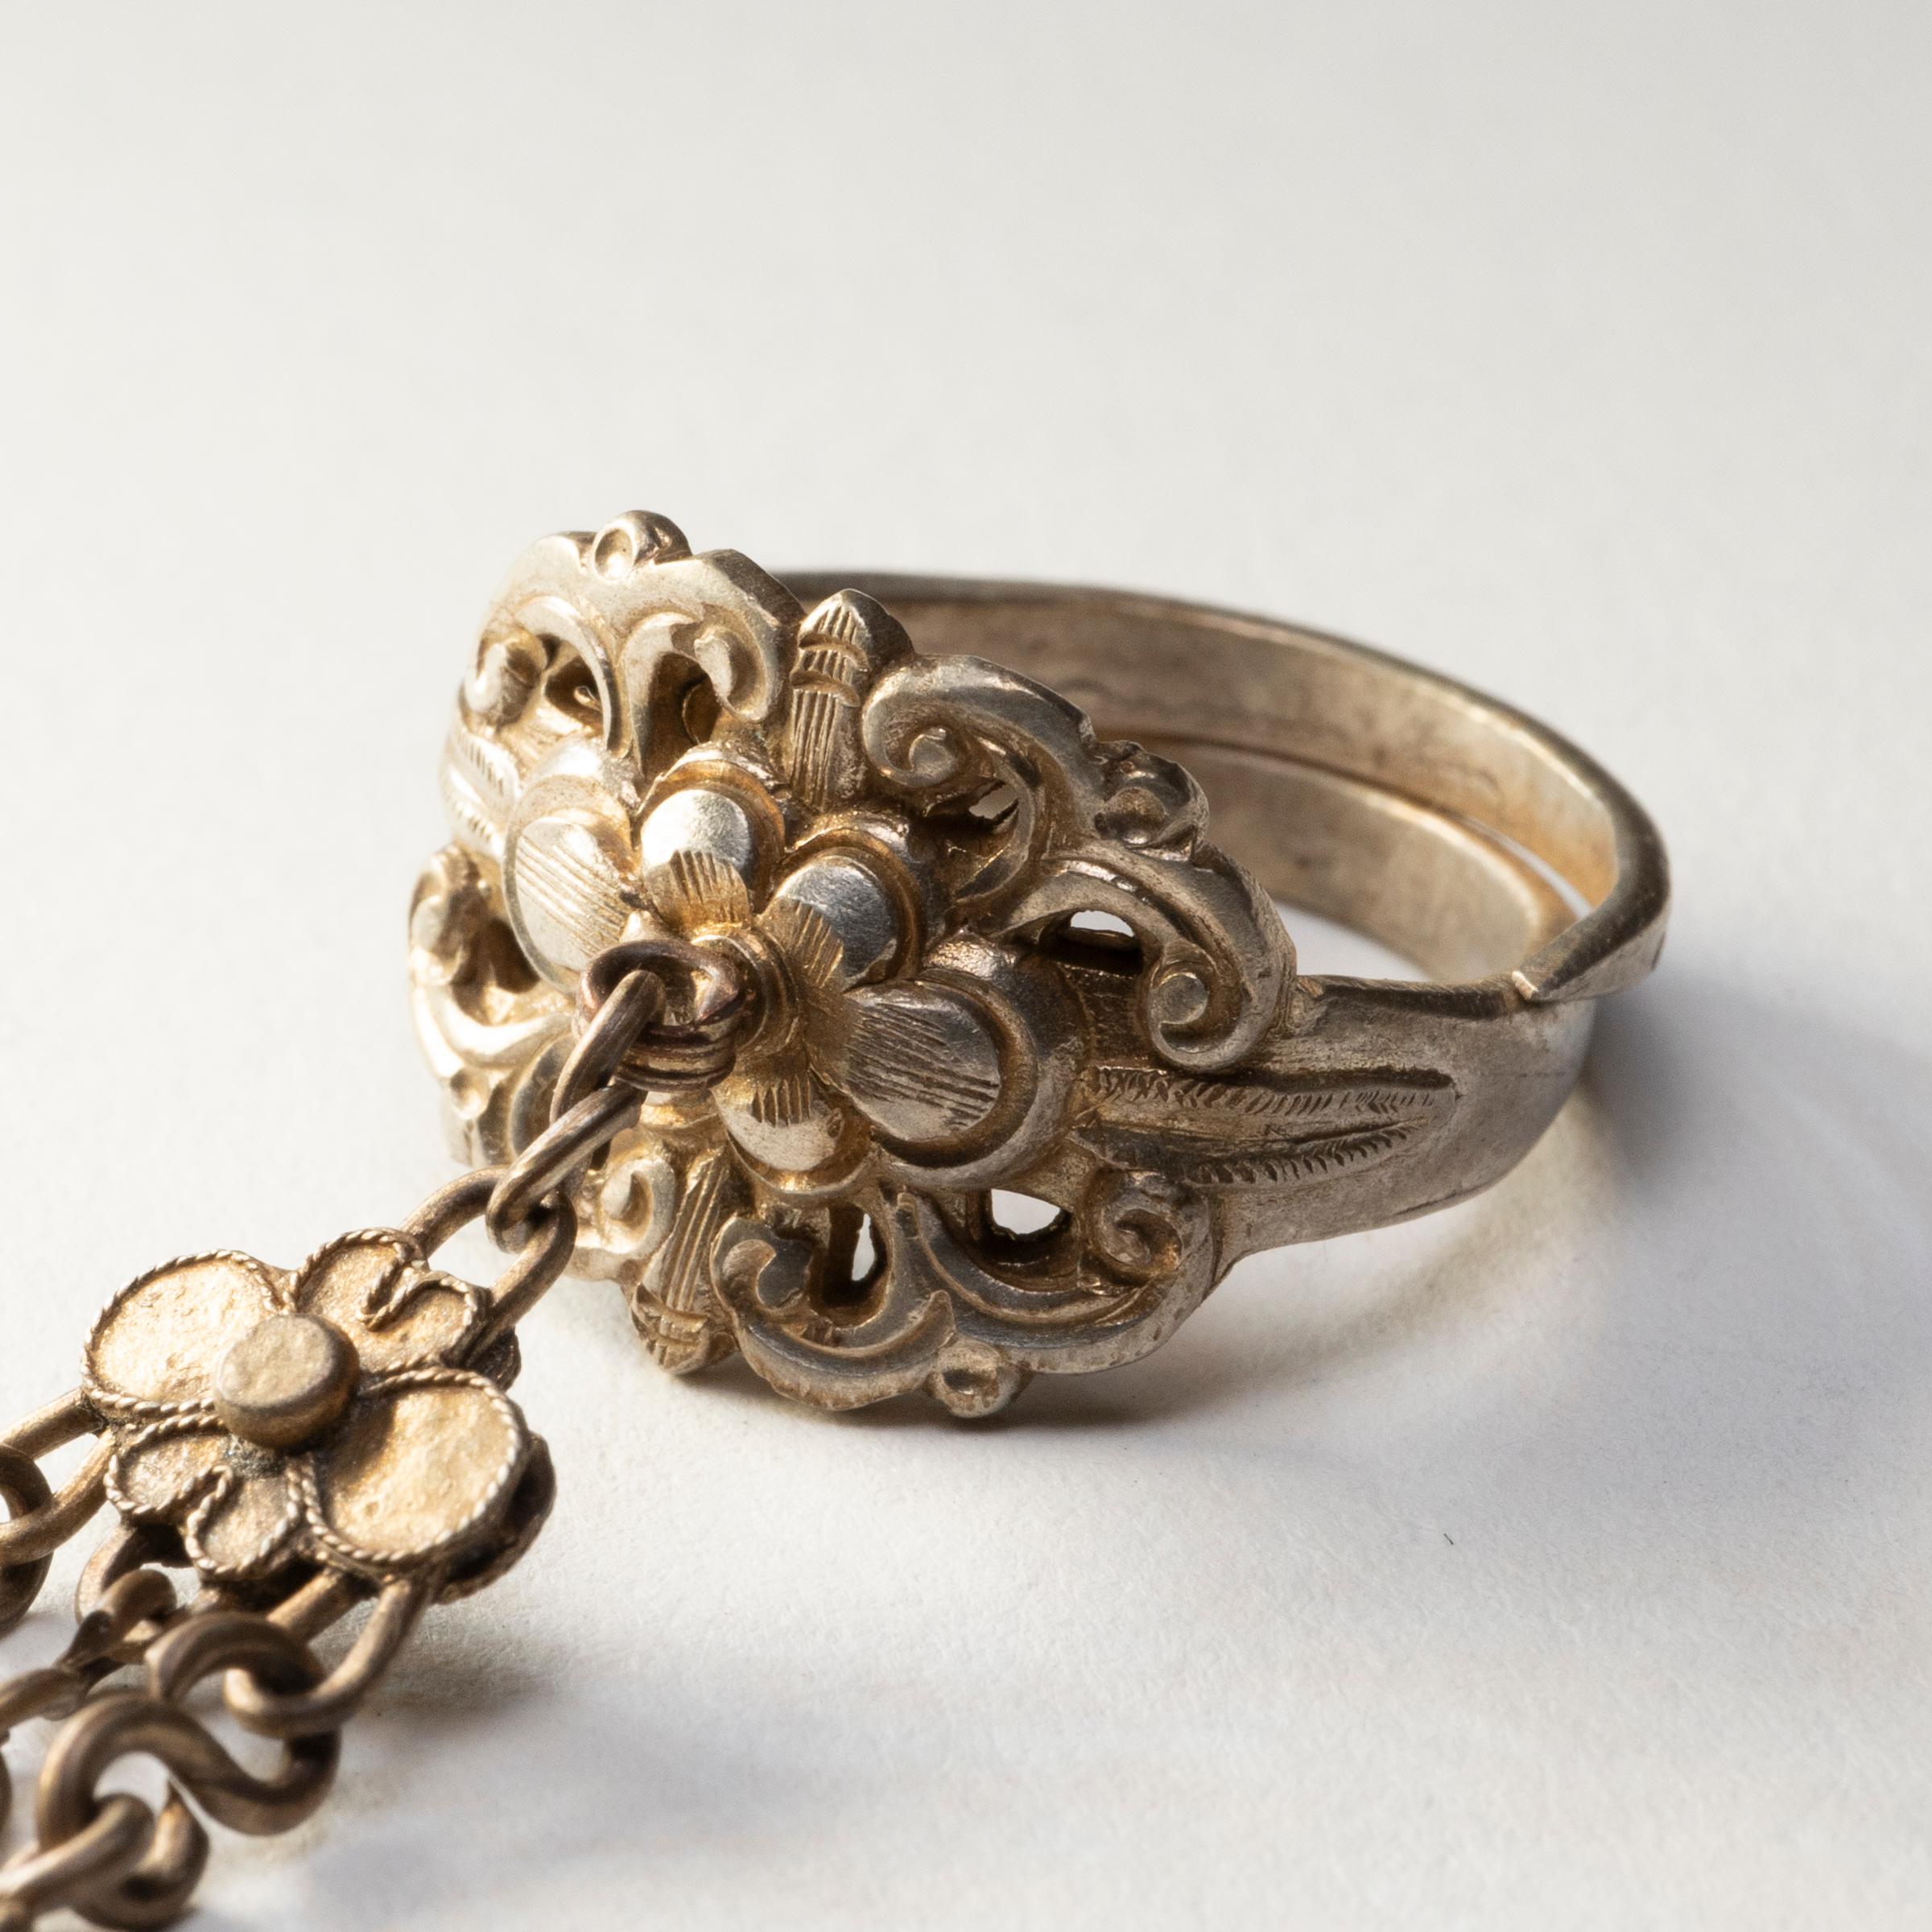 Datée de la fin du XIXe siècle, cette bague à breloques en argent était censée protéger son porteur de la malchance et des esprits malveillants. L'anneau est décoré en relief d'une fleur stylisée entourée de feuilles et de rinceaux. Trois chaînes